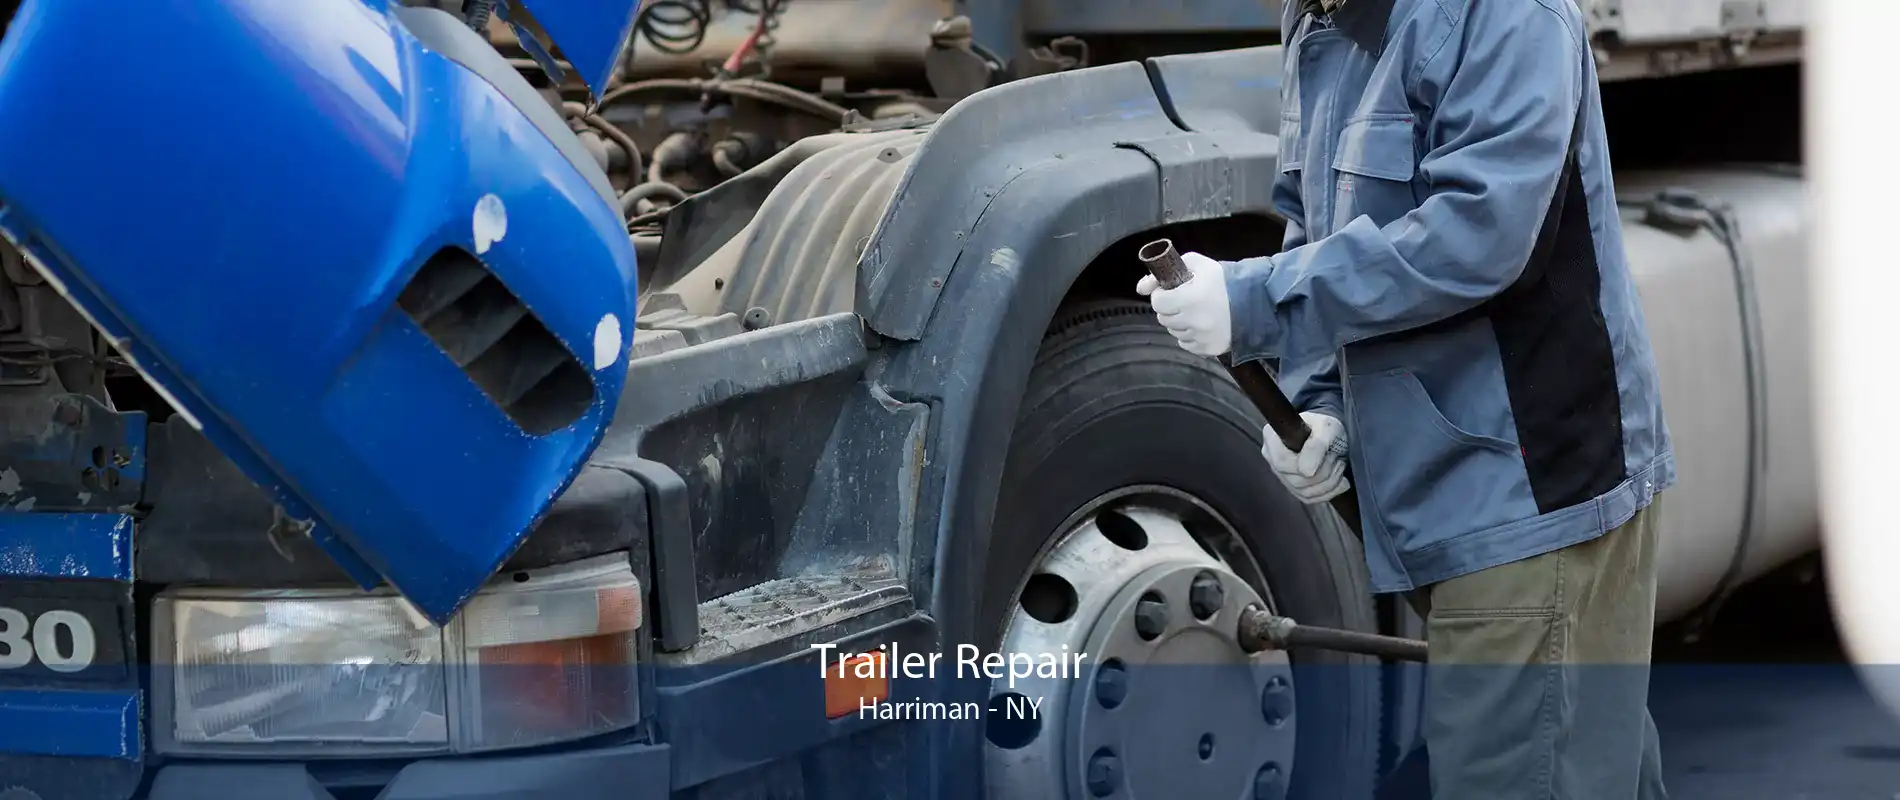 Trailer Repair Harriman - NY